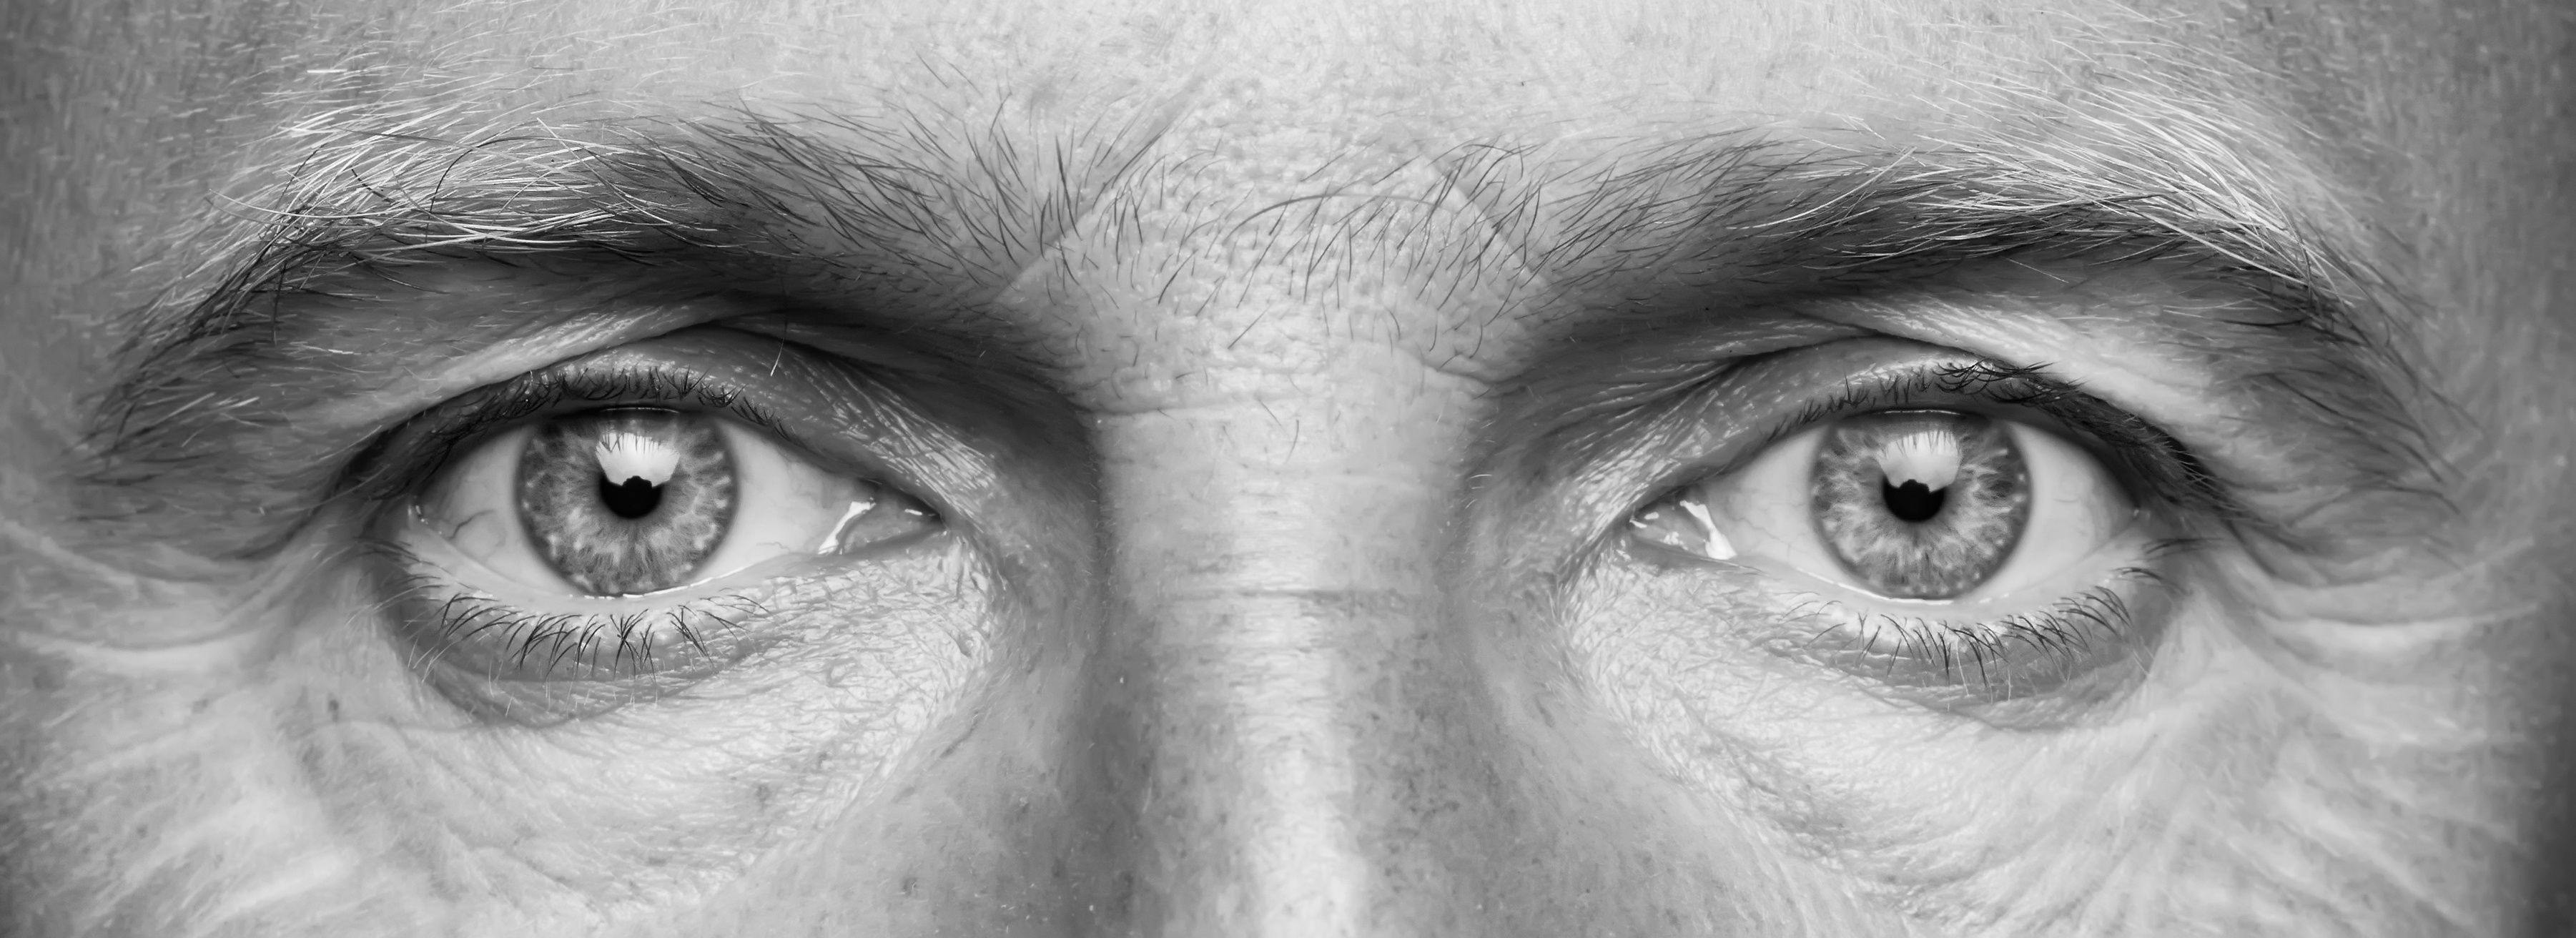 Eyes of older man | Image credit: alekleks - stock.adobe.com